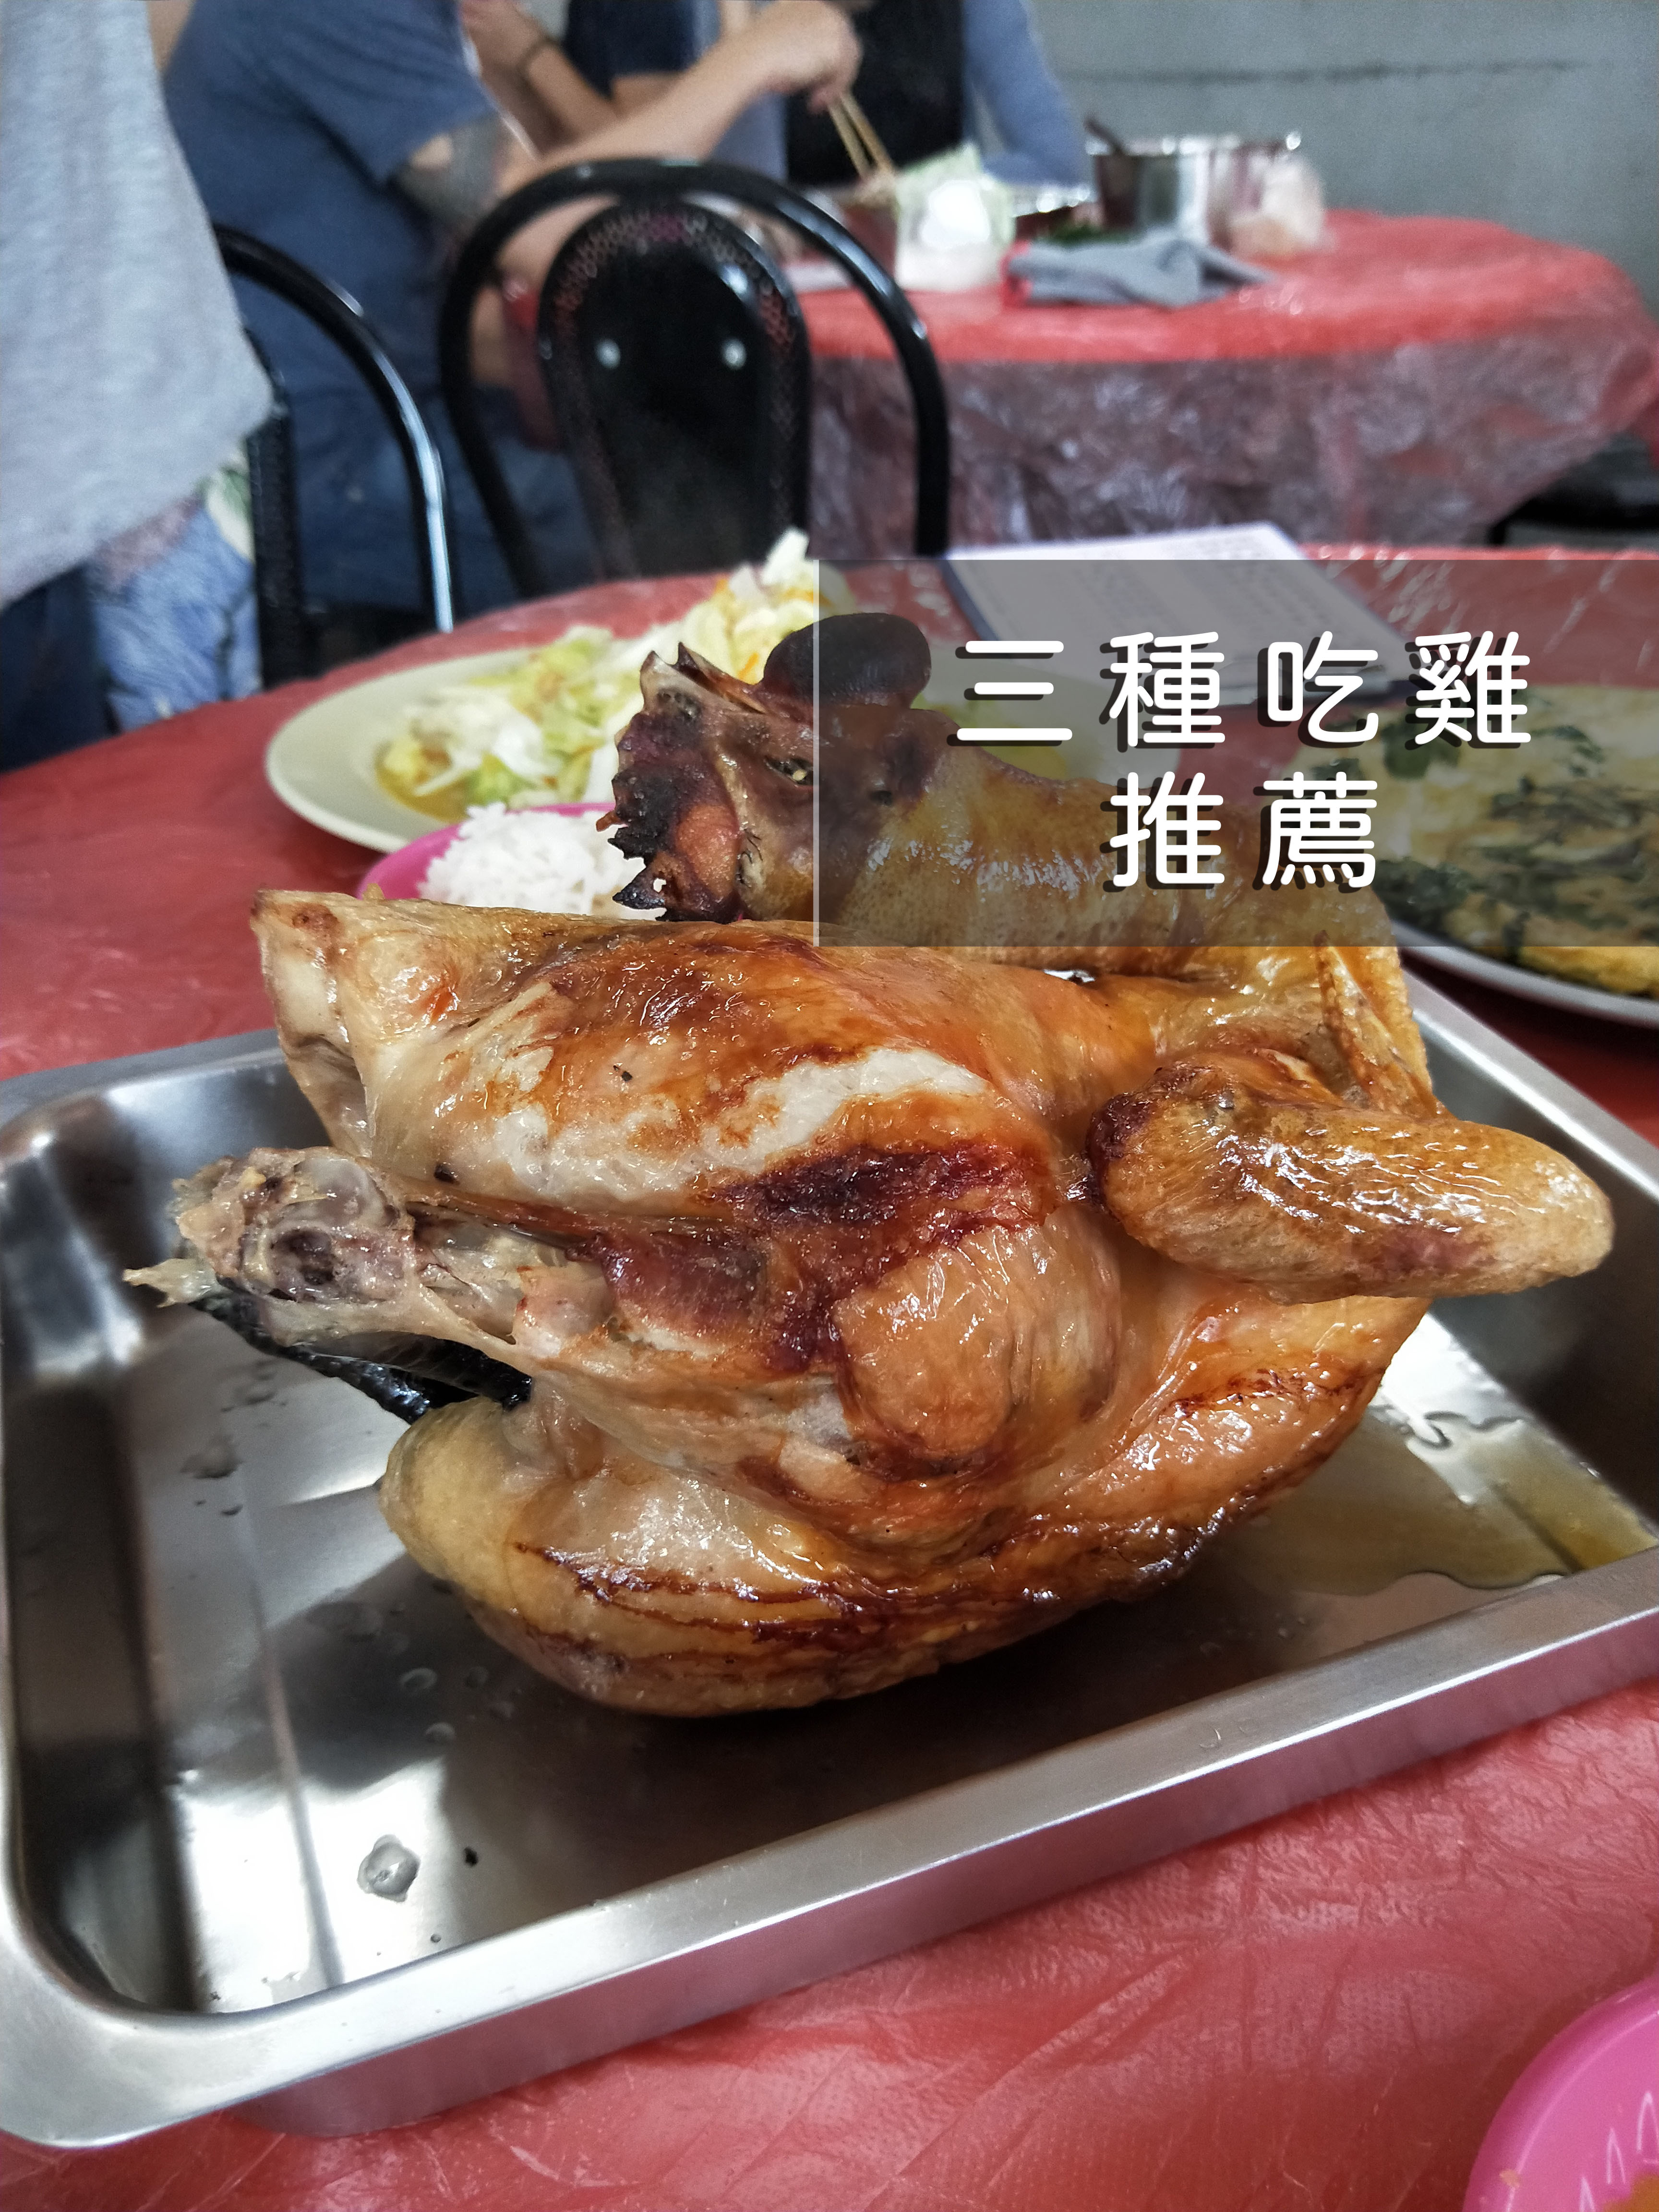 來到台南後，就被在地人帶到各個地方去吃雞，每道雞都是用不同的方式去料理，究竟差異在哪，看完之後希望可以找出符合大家口味的吃雞美食~